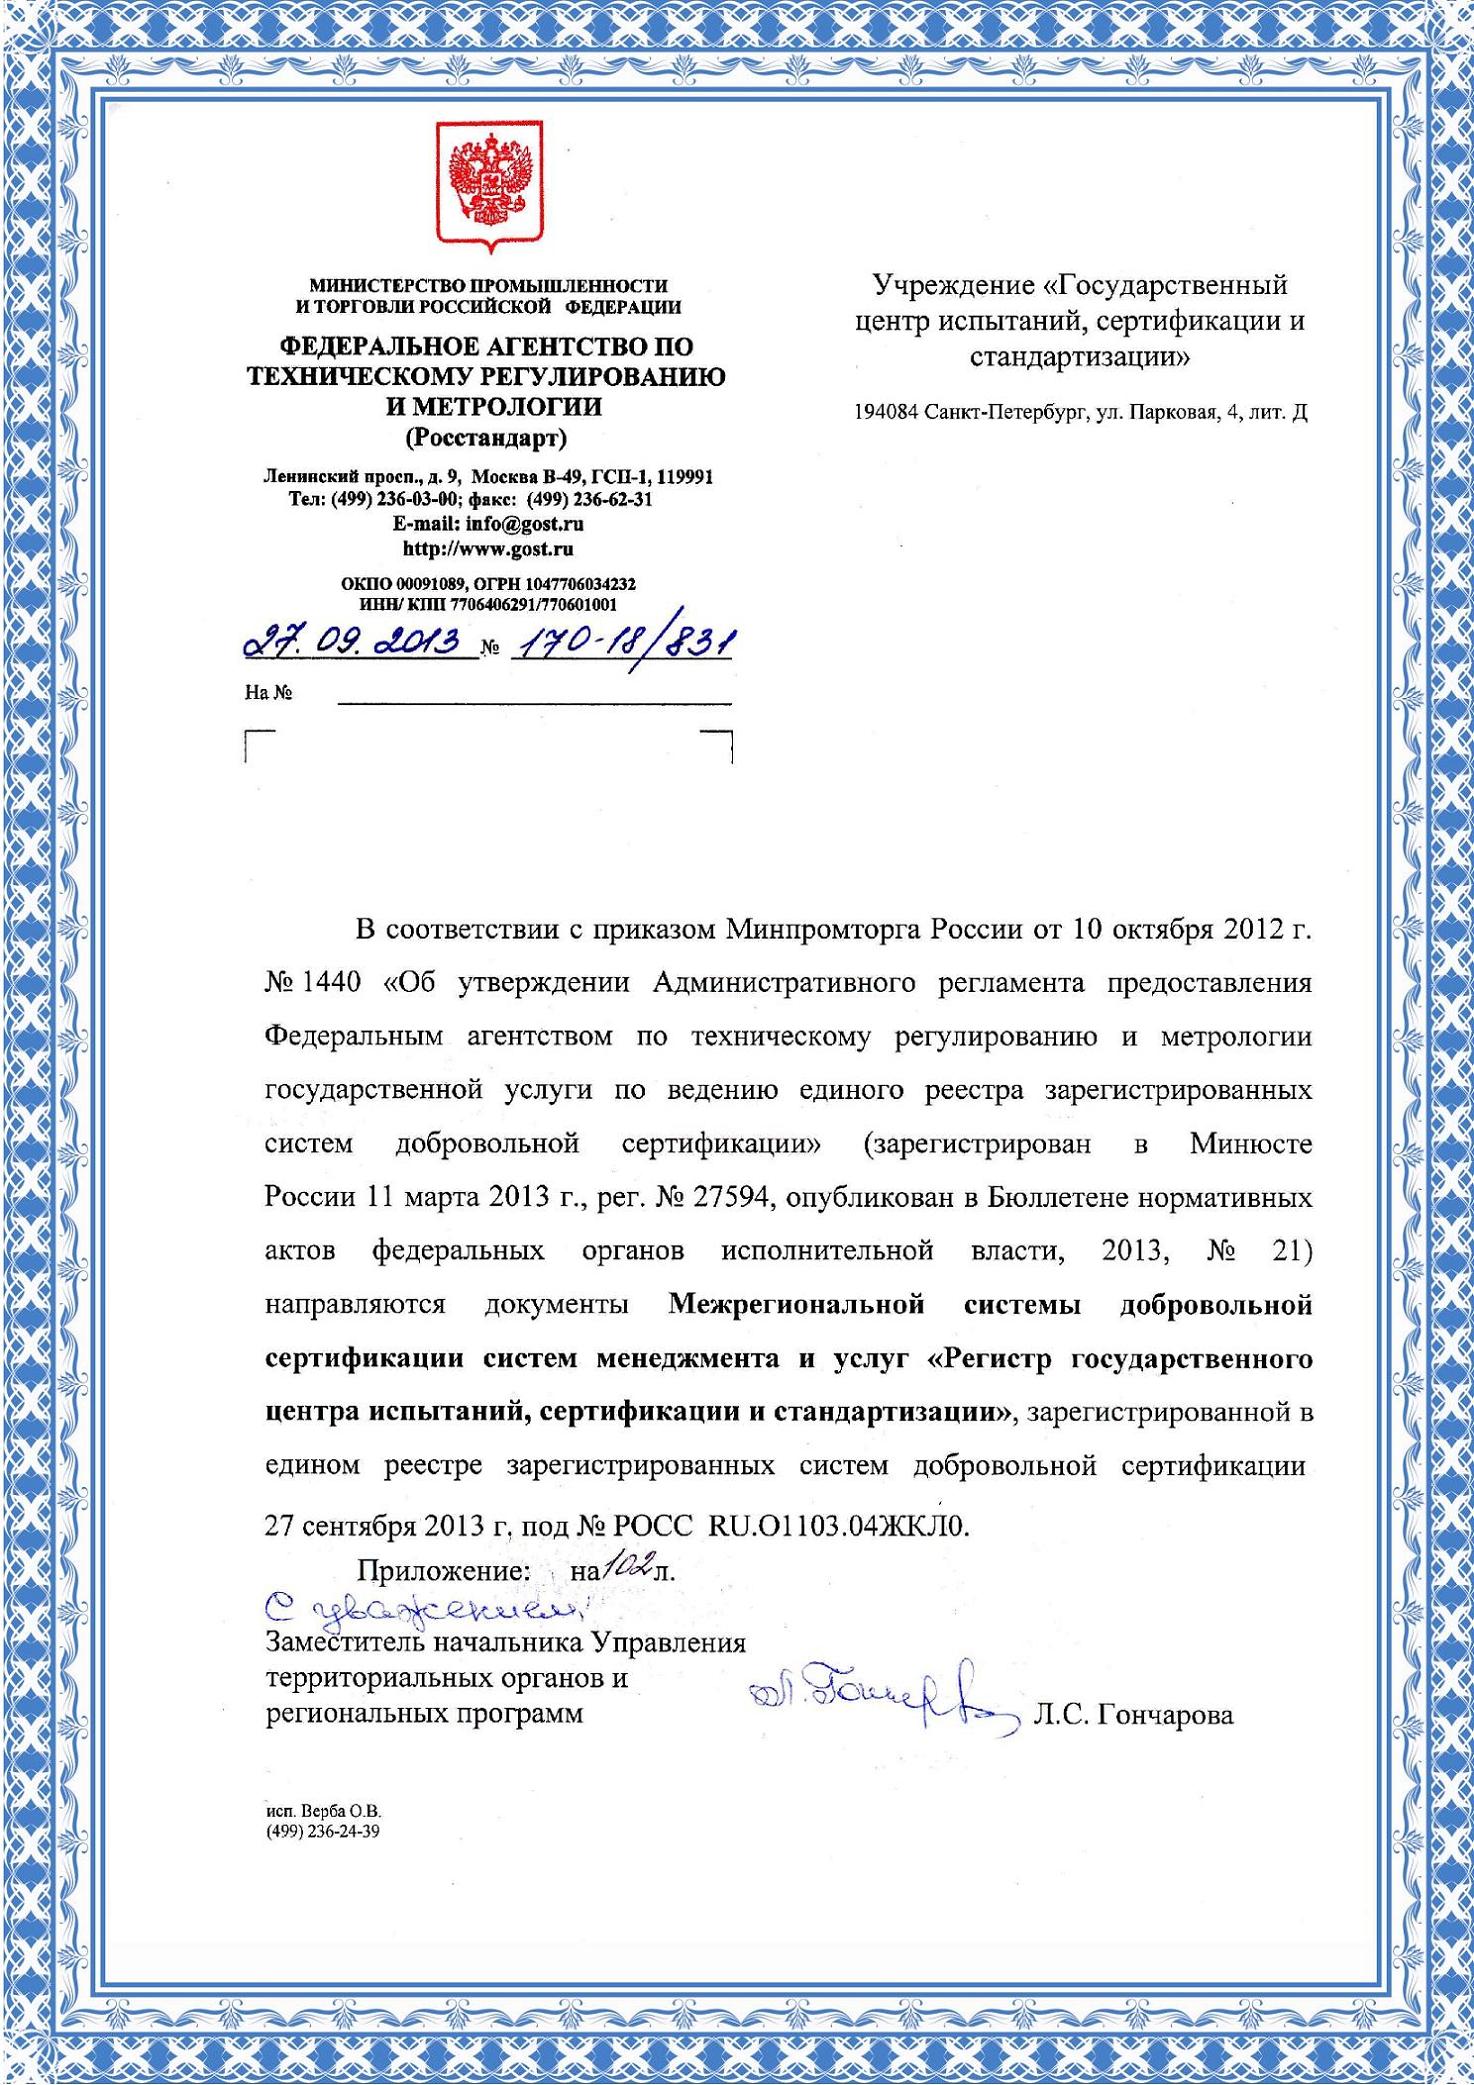 Сертификаты смк версия смк название органа сертификации номер сертификата и дата выдачи